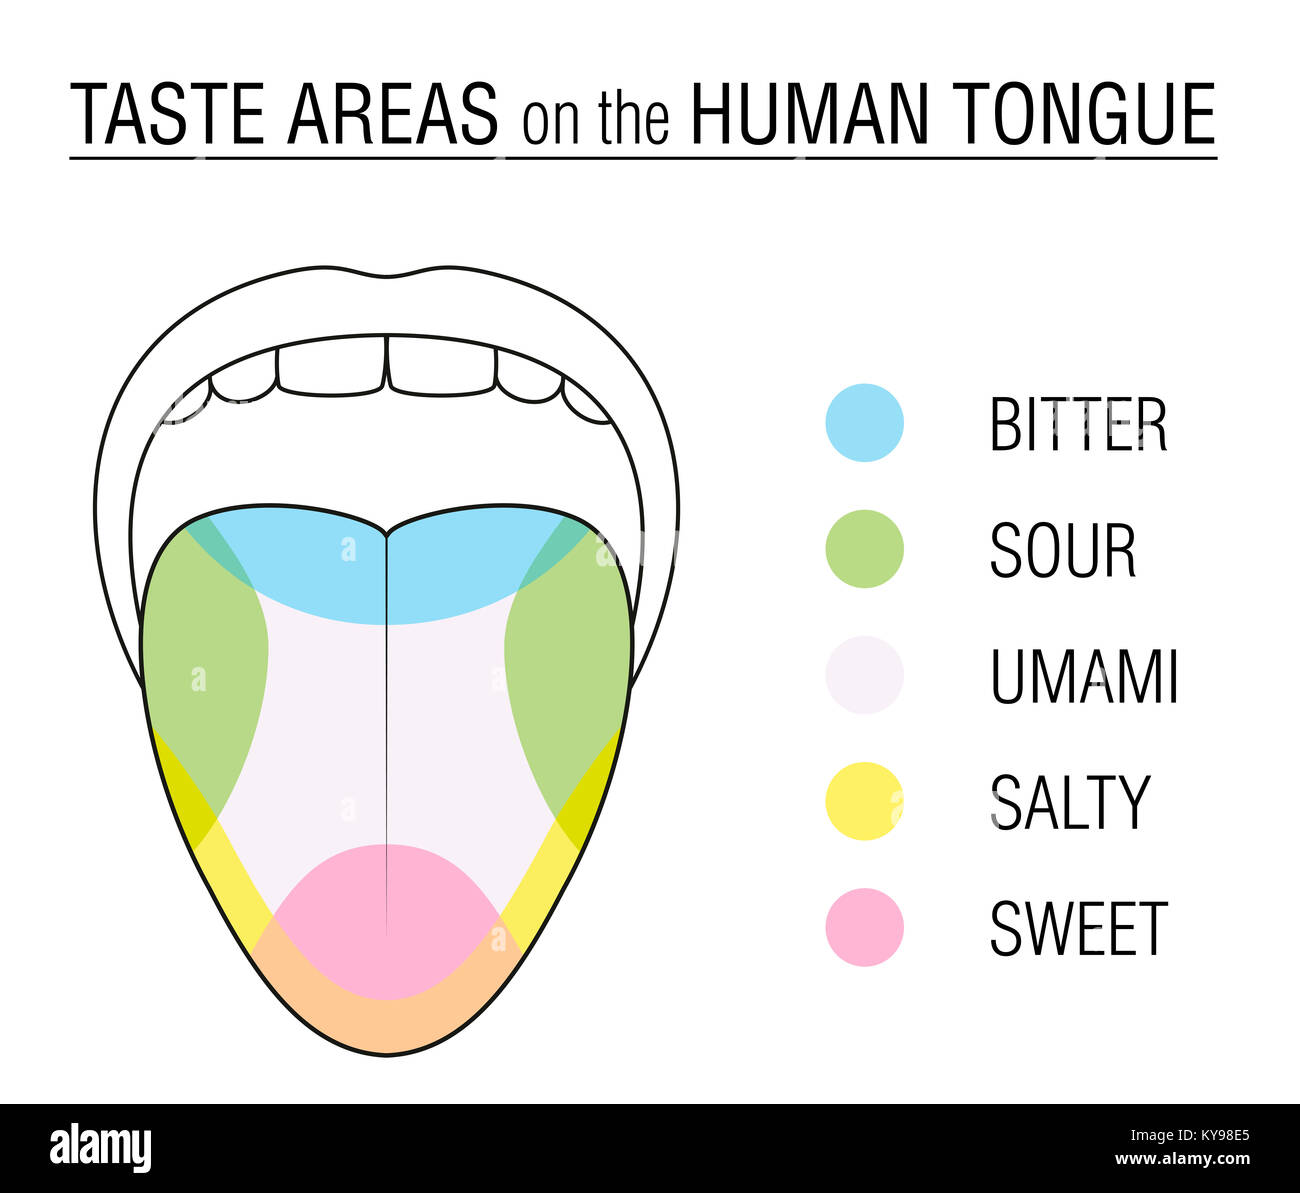 Geschmack Bereiche der menschlichen Zunge - farbige Abteilung mit Zonen der Gaumen für bitter, sauer, süß, salzig und umami Wahrnehmung. Stockfoto